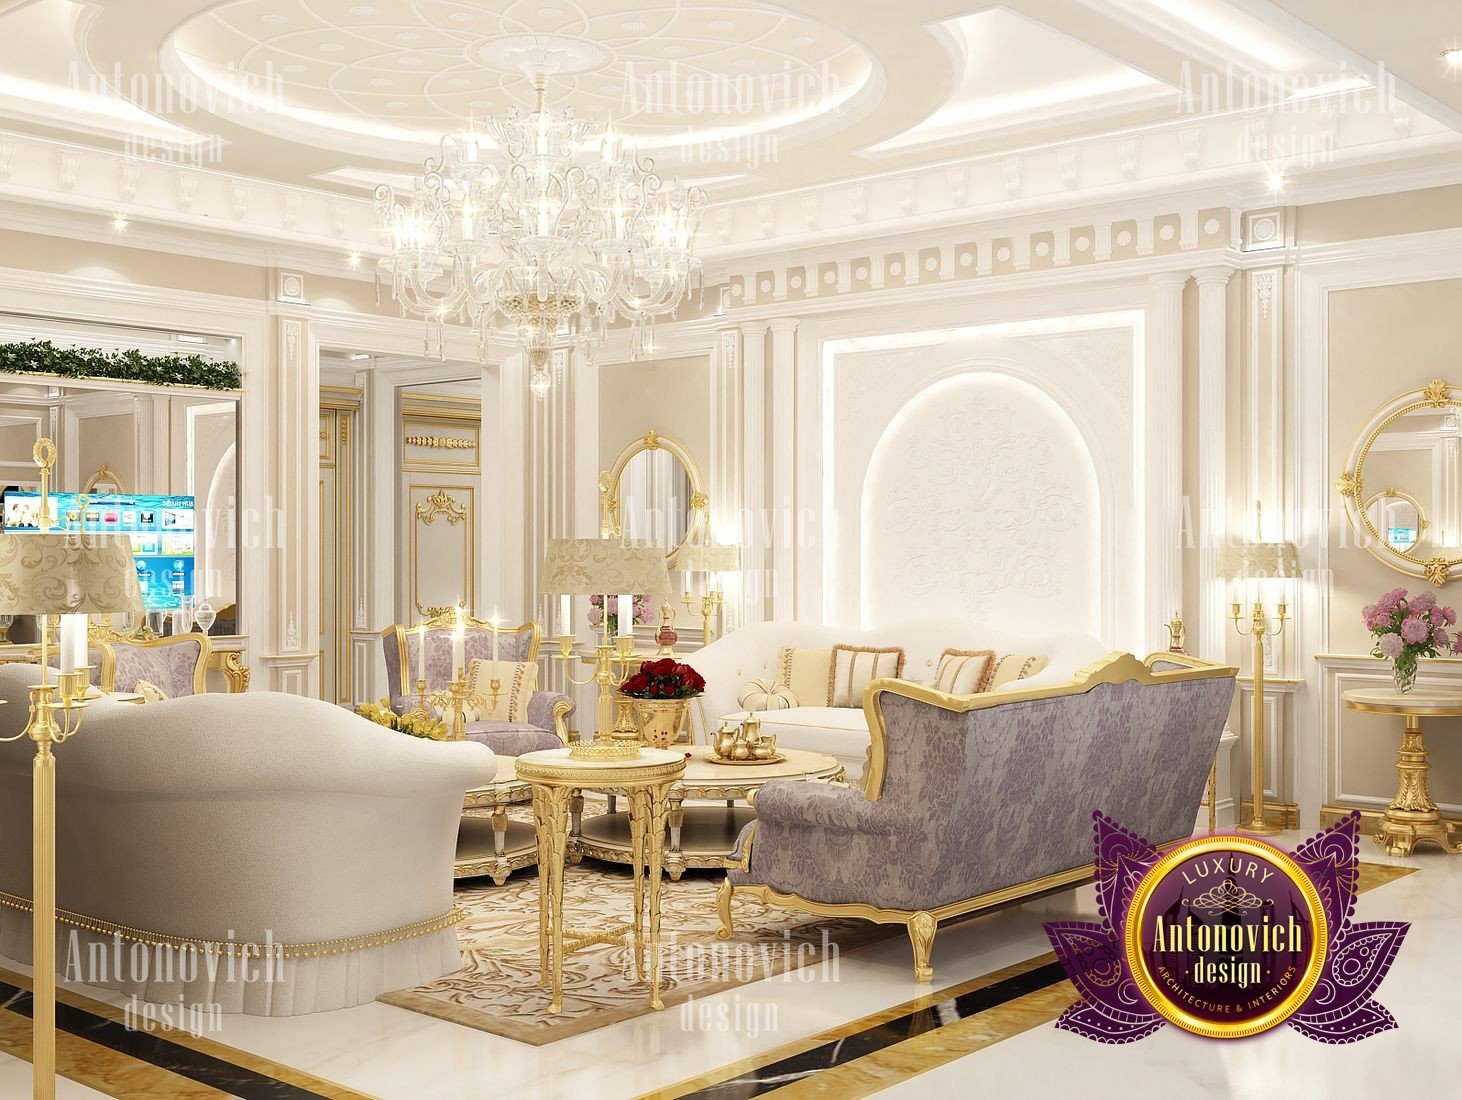 Modern Classic Villa Interior Design by Luxury Antonovich Design